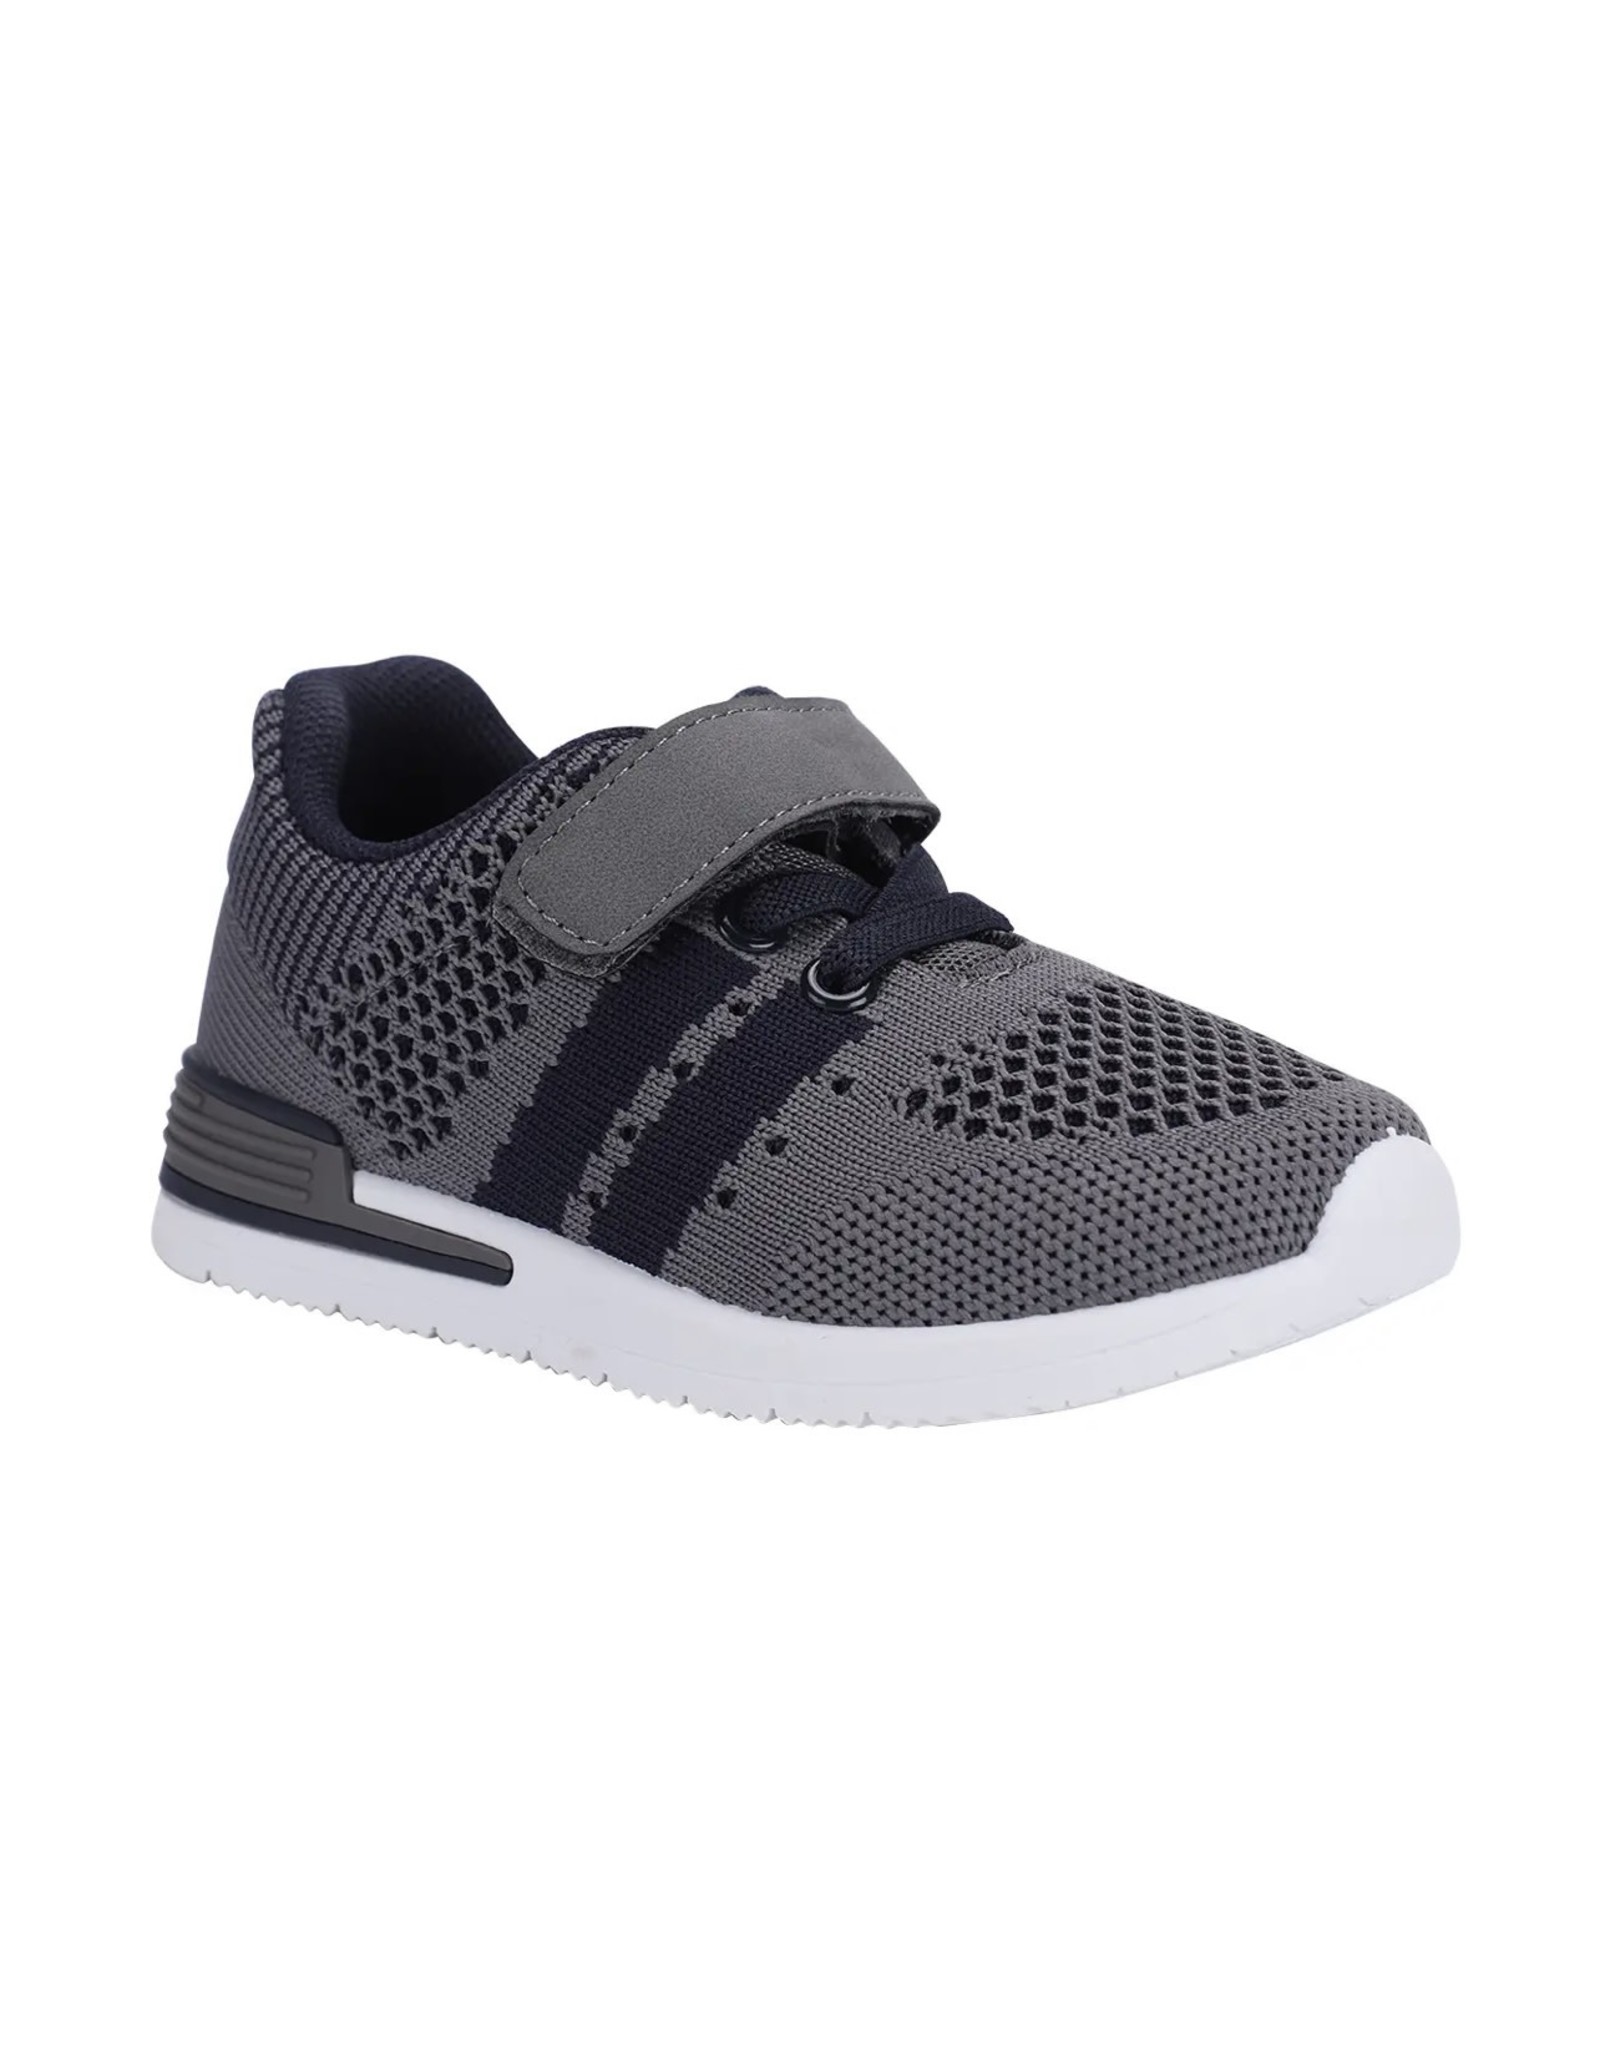 Oomphies Oomphies- Wynn Sneaker: Grey/Navy